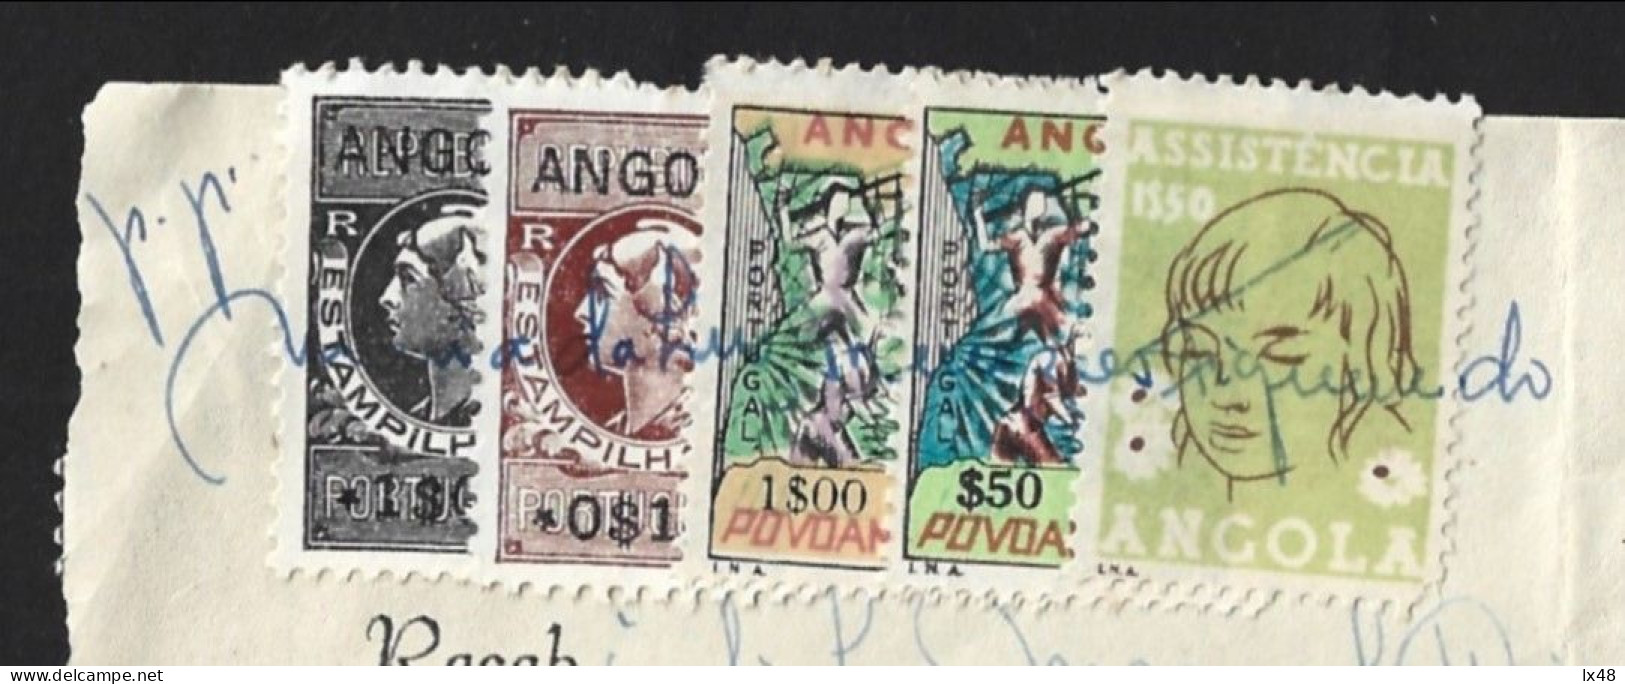 Recibo De Angola 1971 Com Stamps Assistência E Povoamento Utilizados Como Estampilha Fiscal. Angola Receipt From 1971 Wi - Cartas & Documentos